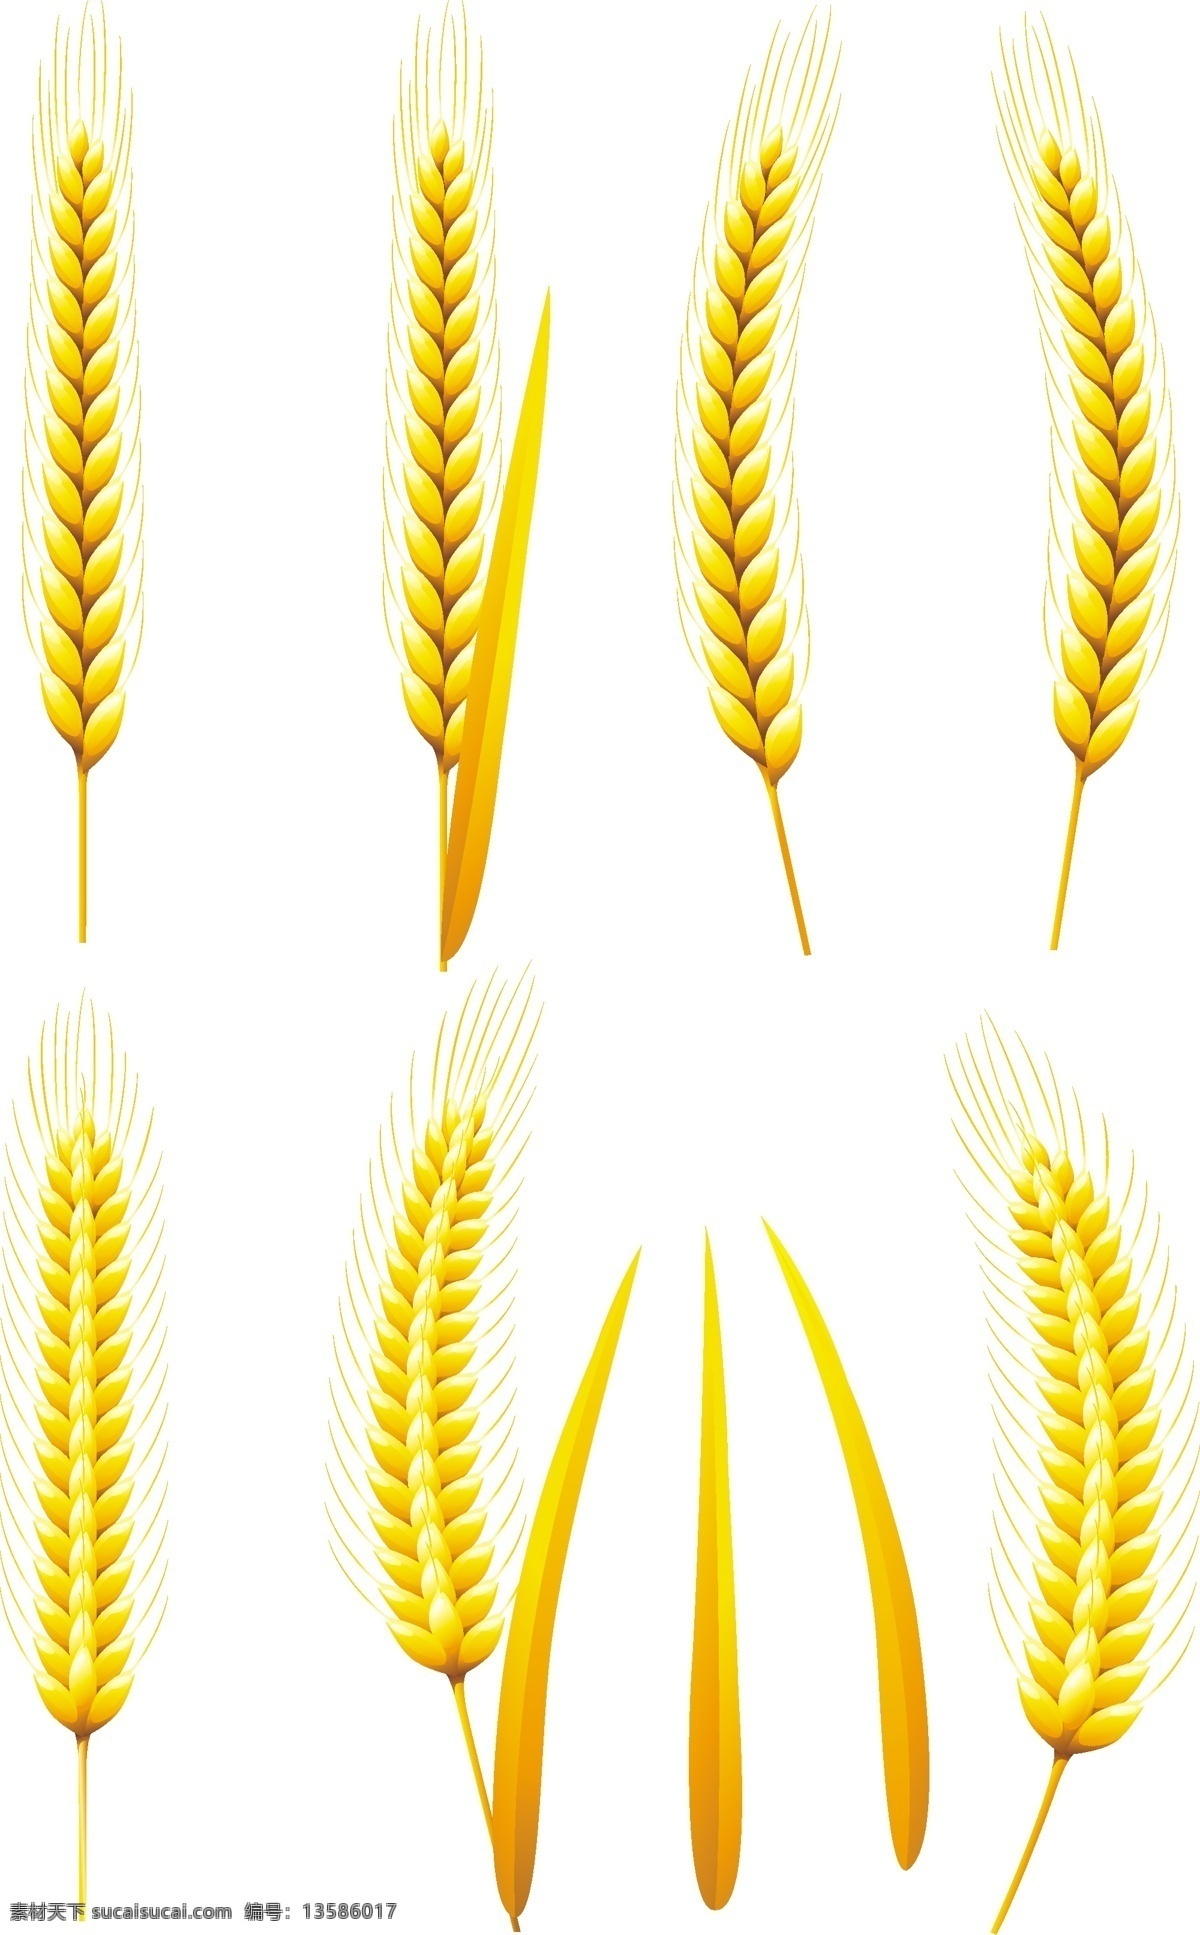 金色小麦麦穗 小麦 麦穗 黄色 矢量素材 设计素材